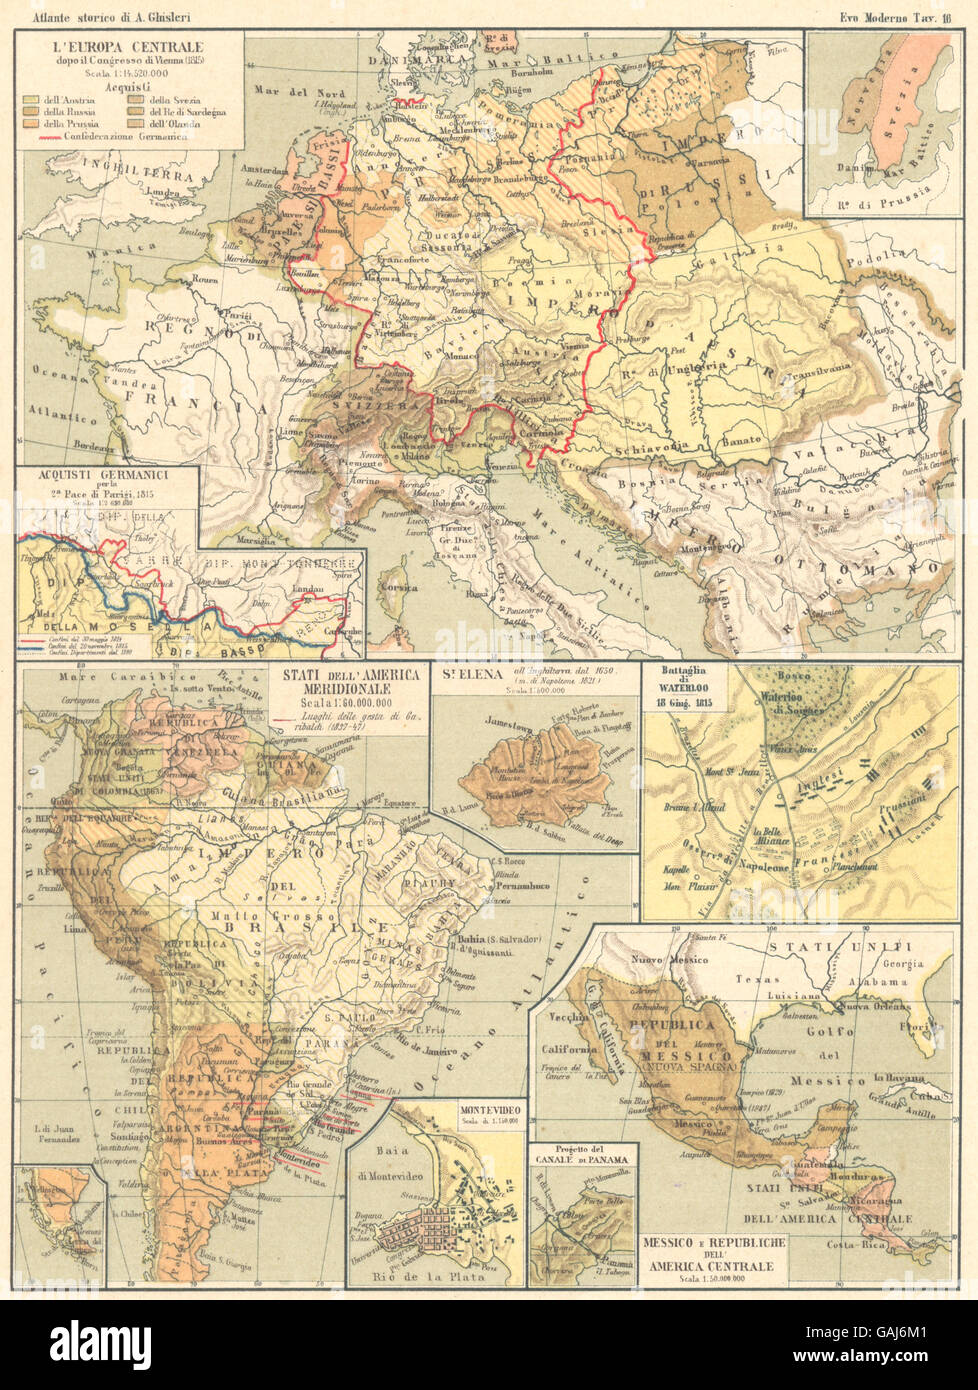 Europa Centrale: Acquisti Germanici; America del Sud; Waterloo; Messico, 1889 Mappa Foto Stock